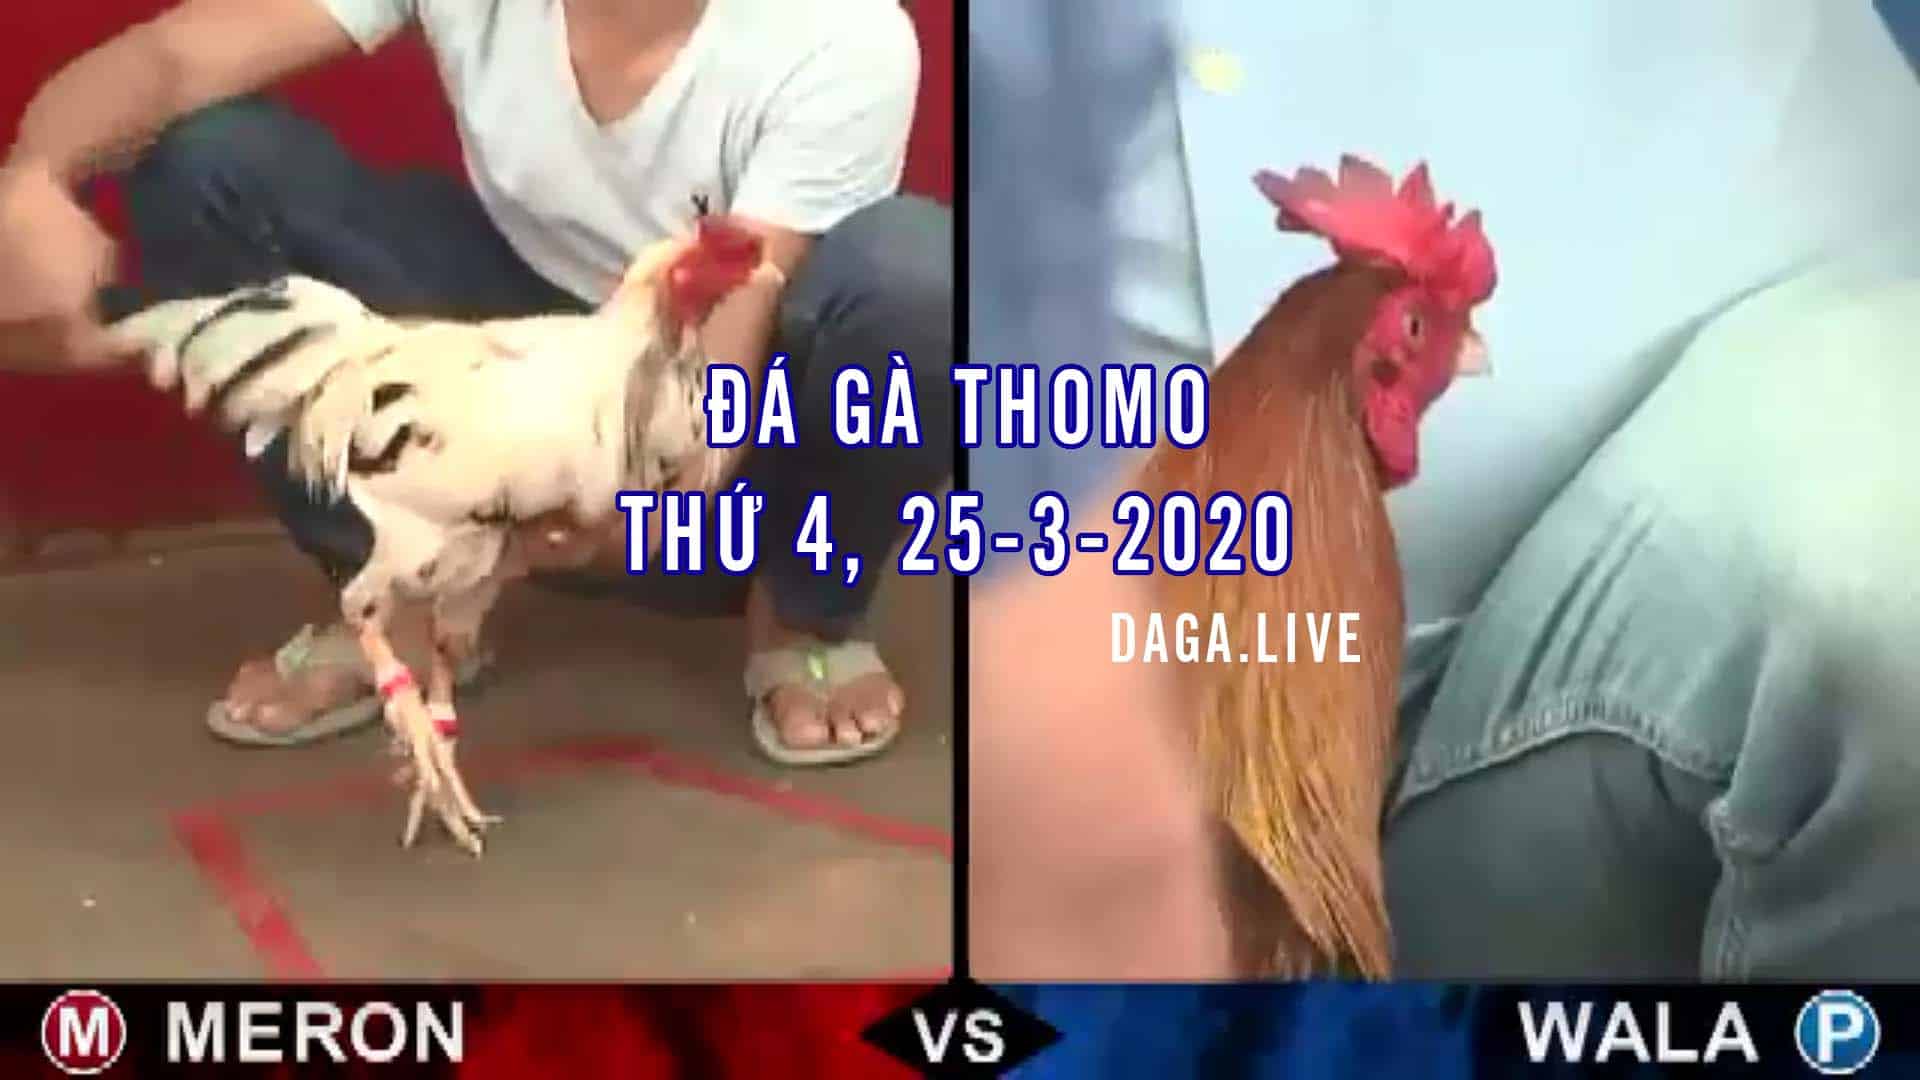 DAGA.LIVE - Đá gà thomo hôm nay, đá gà campuchia, đá gà trực tiếp, đá gà cựa sắt thứ 4 ngày 25-3-2020